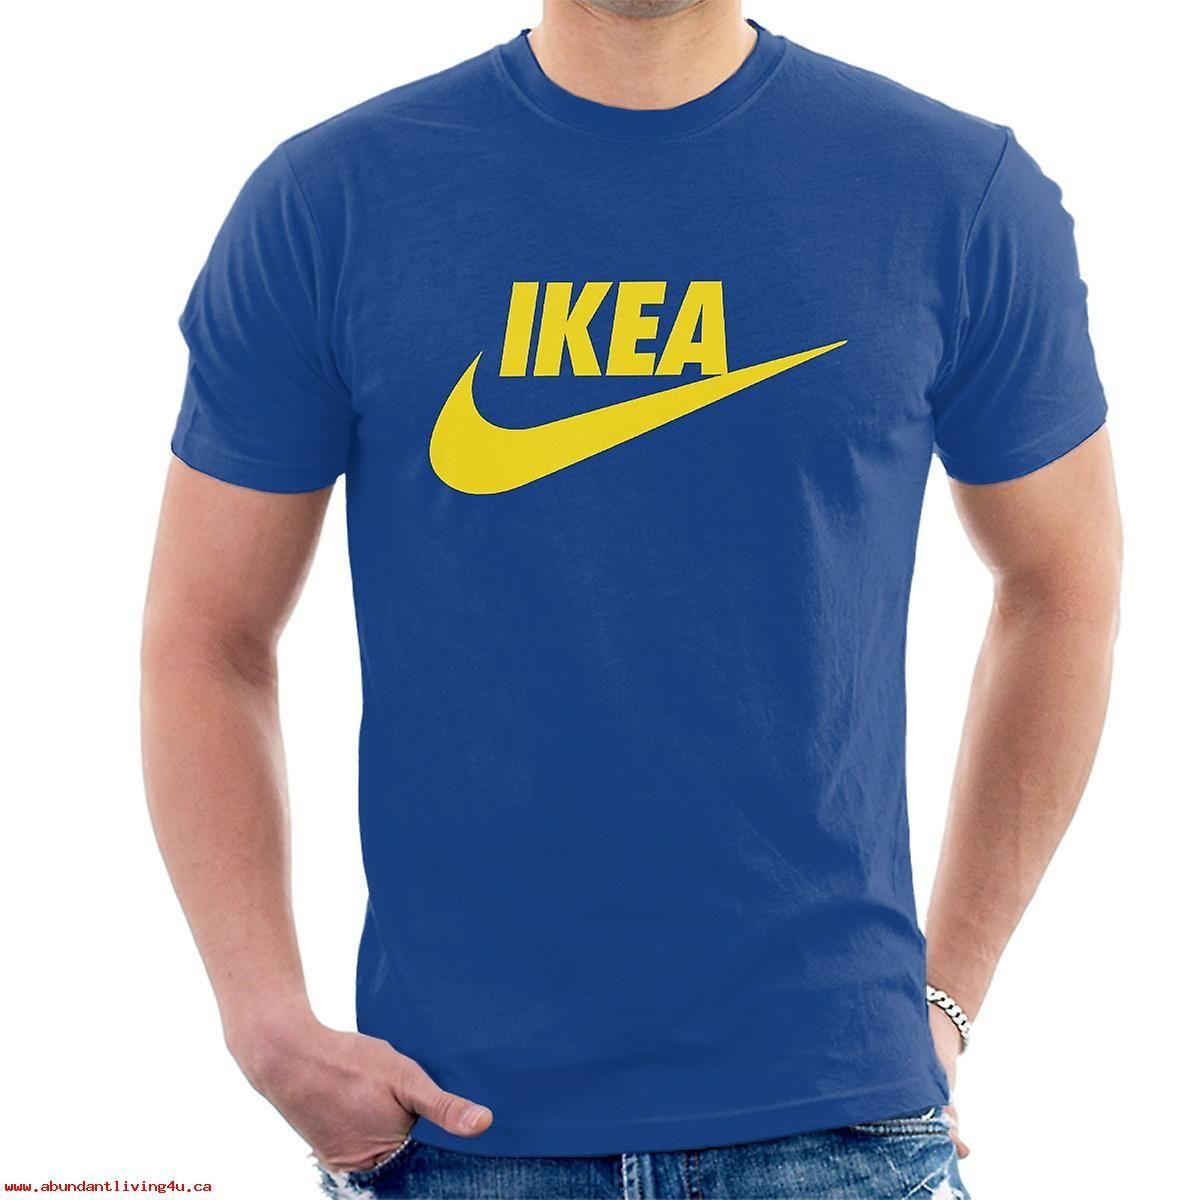 IKEA Yellow Logo - Ikea Nike Yellow Logo Mens T-Shirt 8enSdbx0